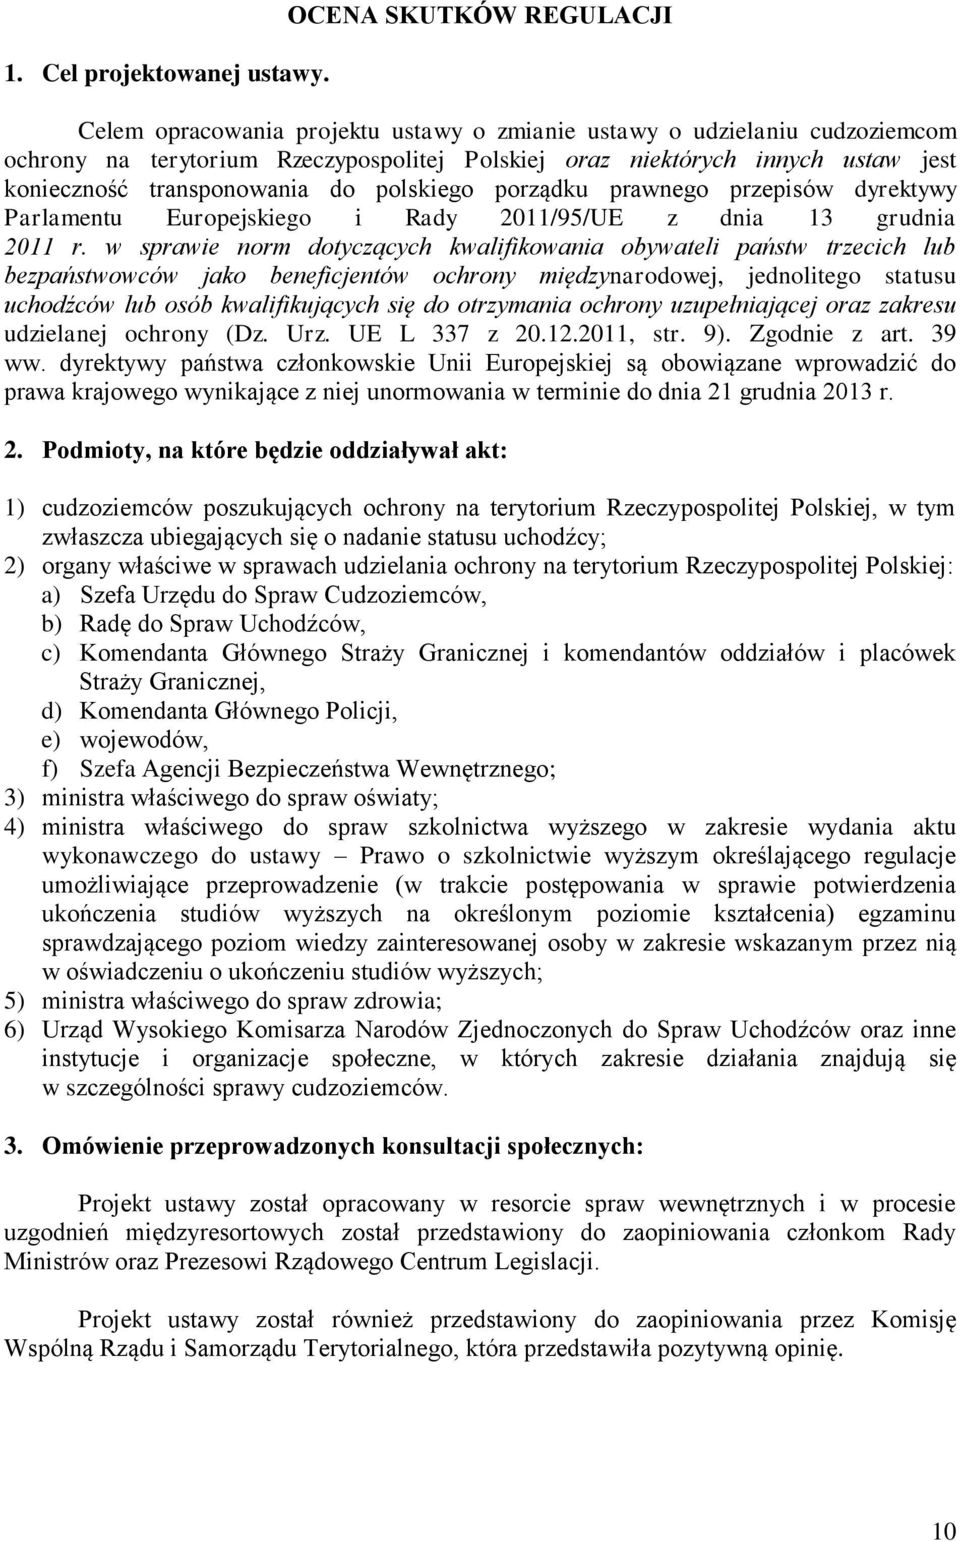 transponowania do polskiego porządku prawnego przepisów dyrektywy Parlamentu Europejskiego i Rady 2011/95/UE z dnia 13 grudnia 2011 r.